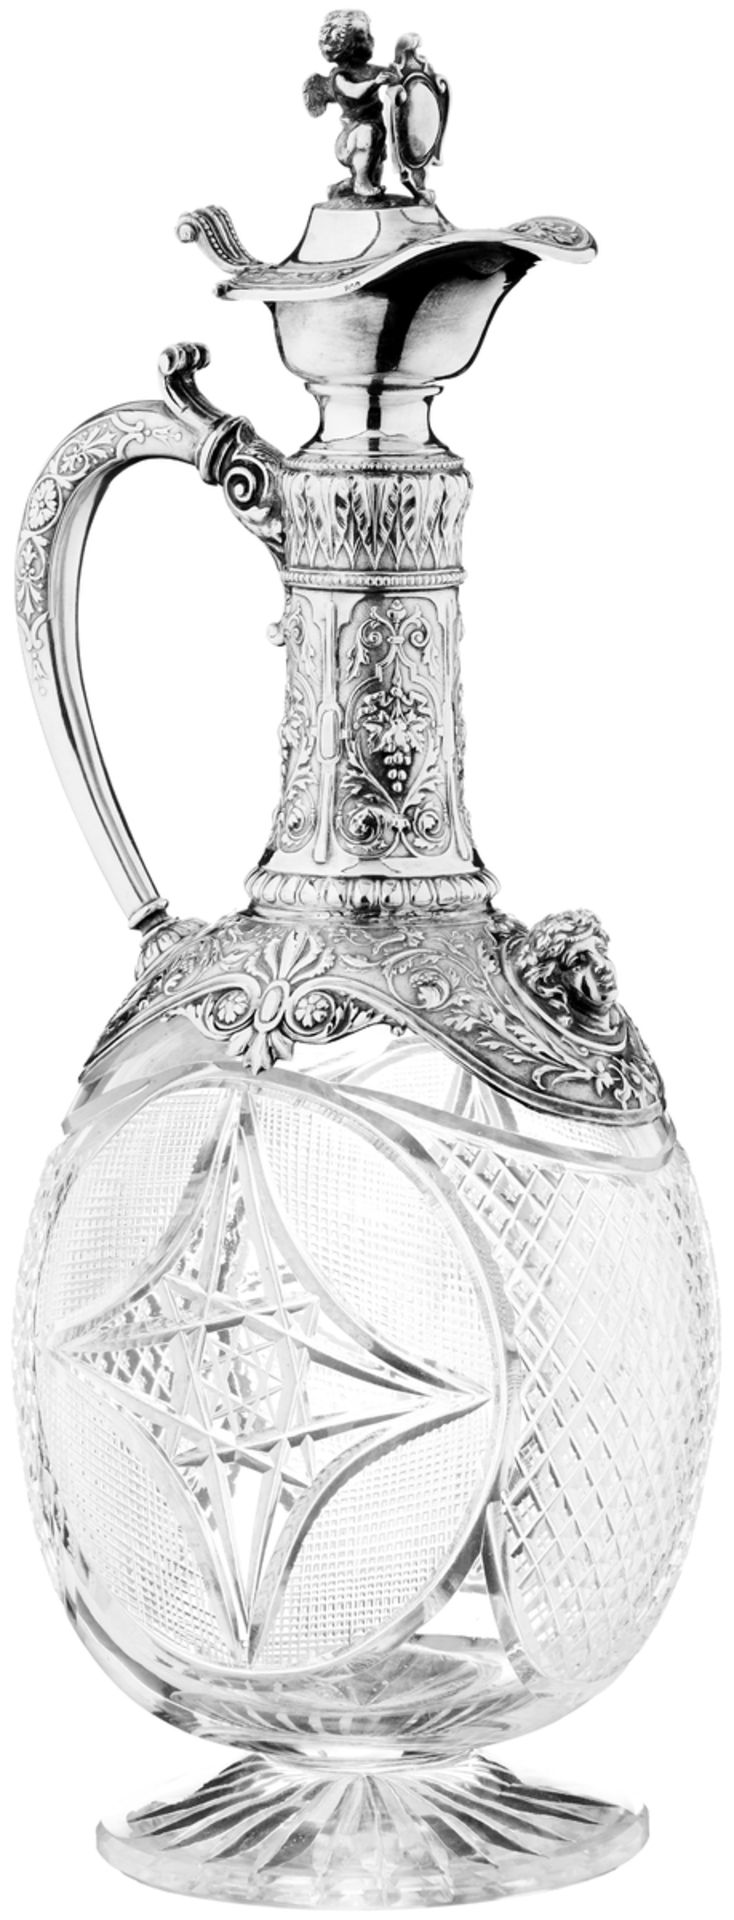 KaraffeDeutschland, um 1880. Farbloses Kristallglas mit Zierschliff. Montierung aus Silber mit